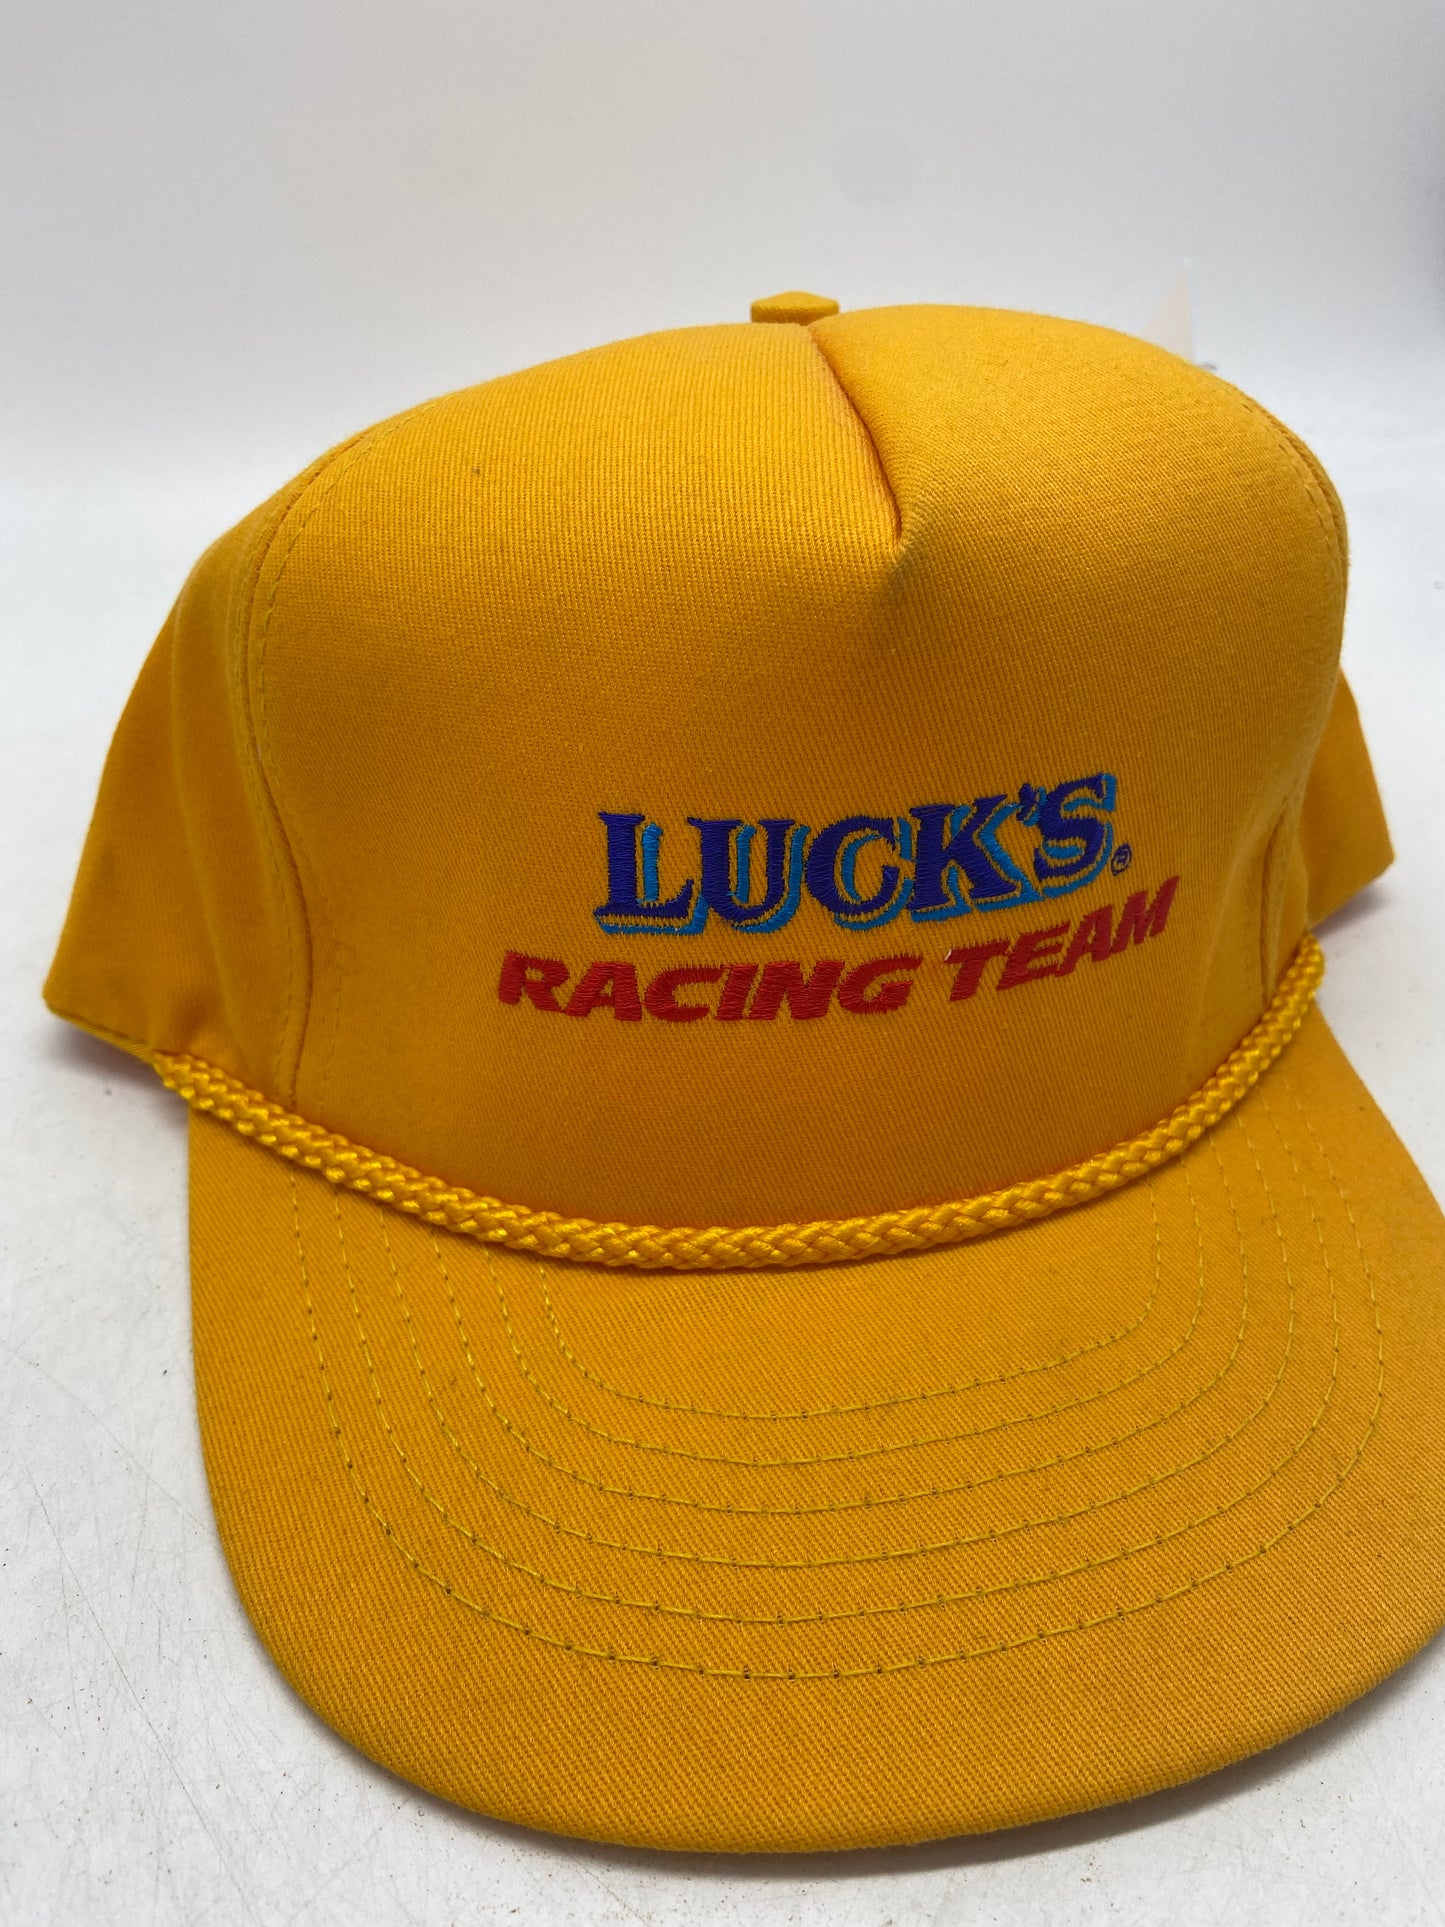 VTG Luck's Racing Team Trucker Snapback